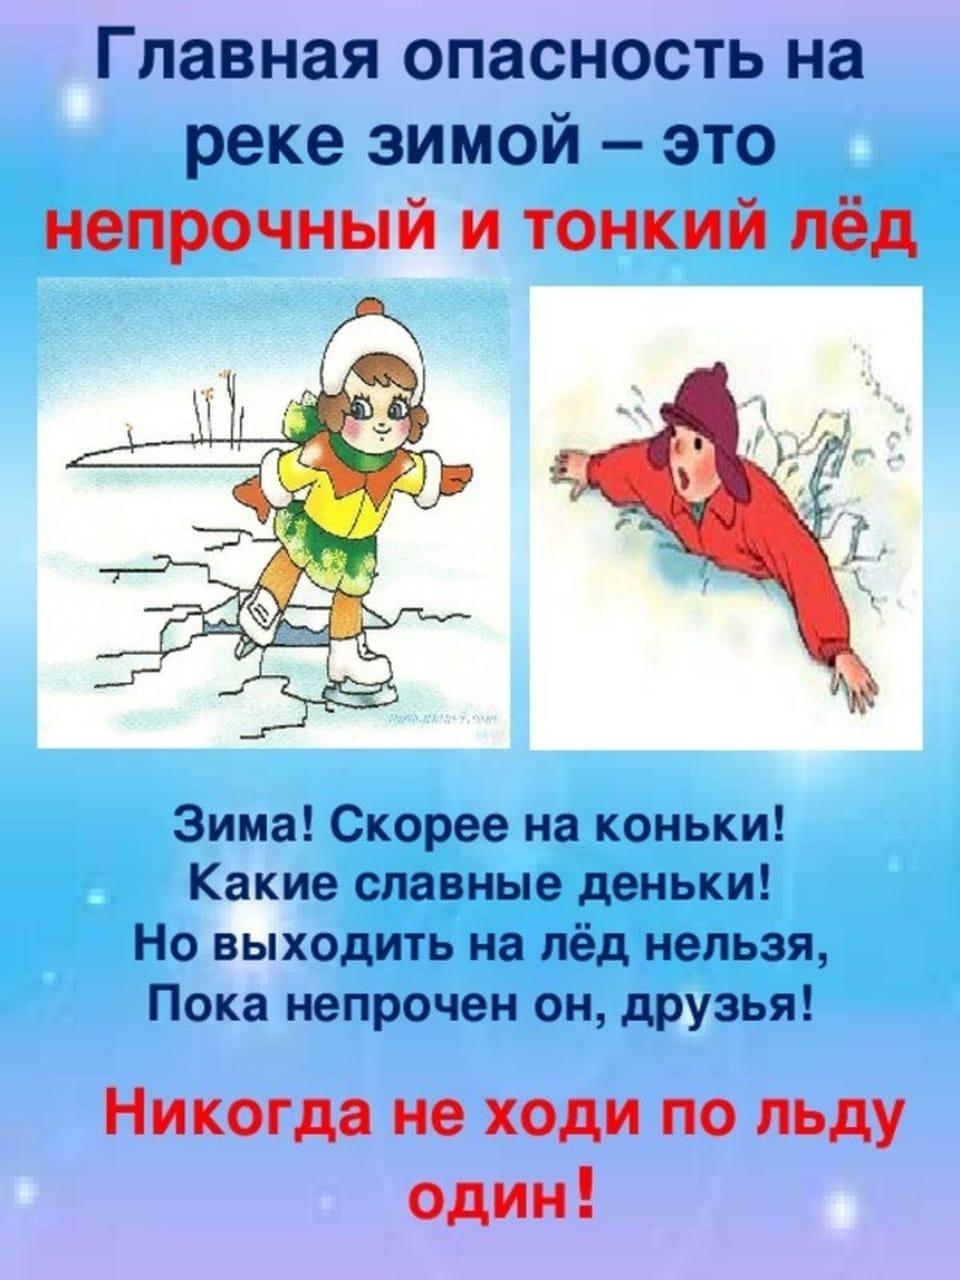 Безопасность зимой © Туголицкая СШ